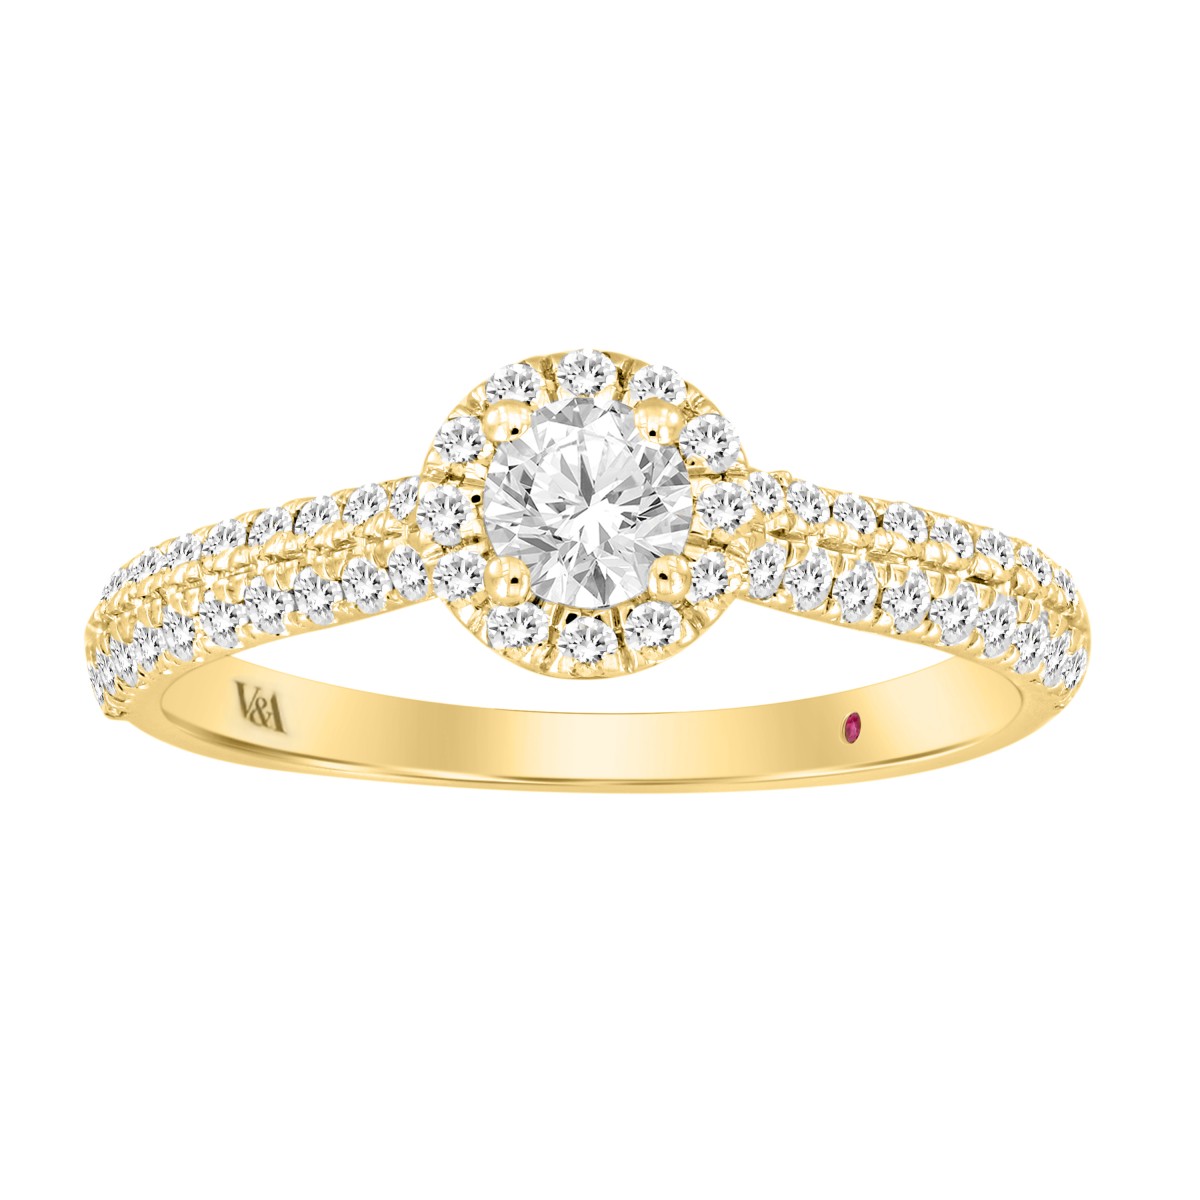 14K YELLOW GOLD 5/8CT ROUND DIAMOND LADIES RING (CENTER STONE ROUND DIAMOND 0.25CT)